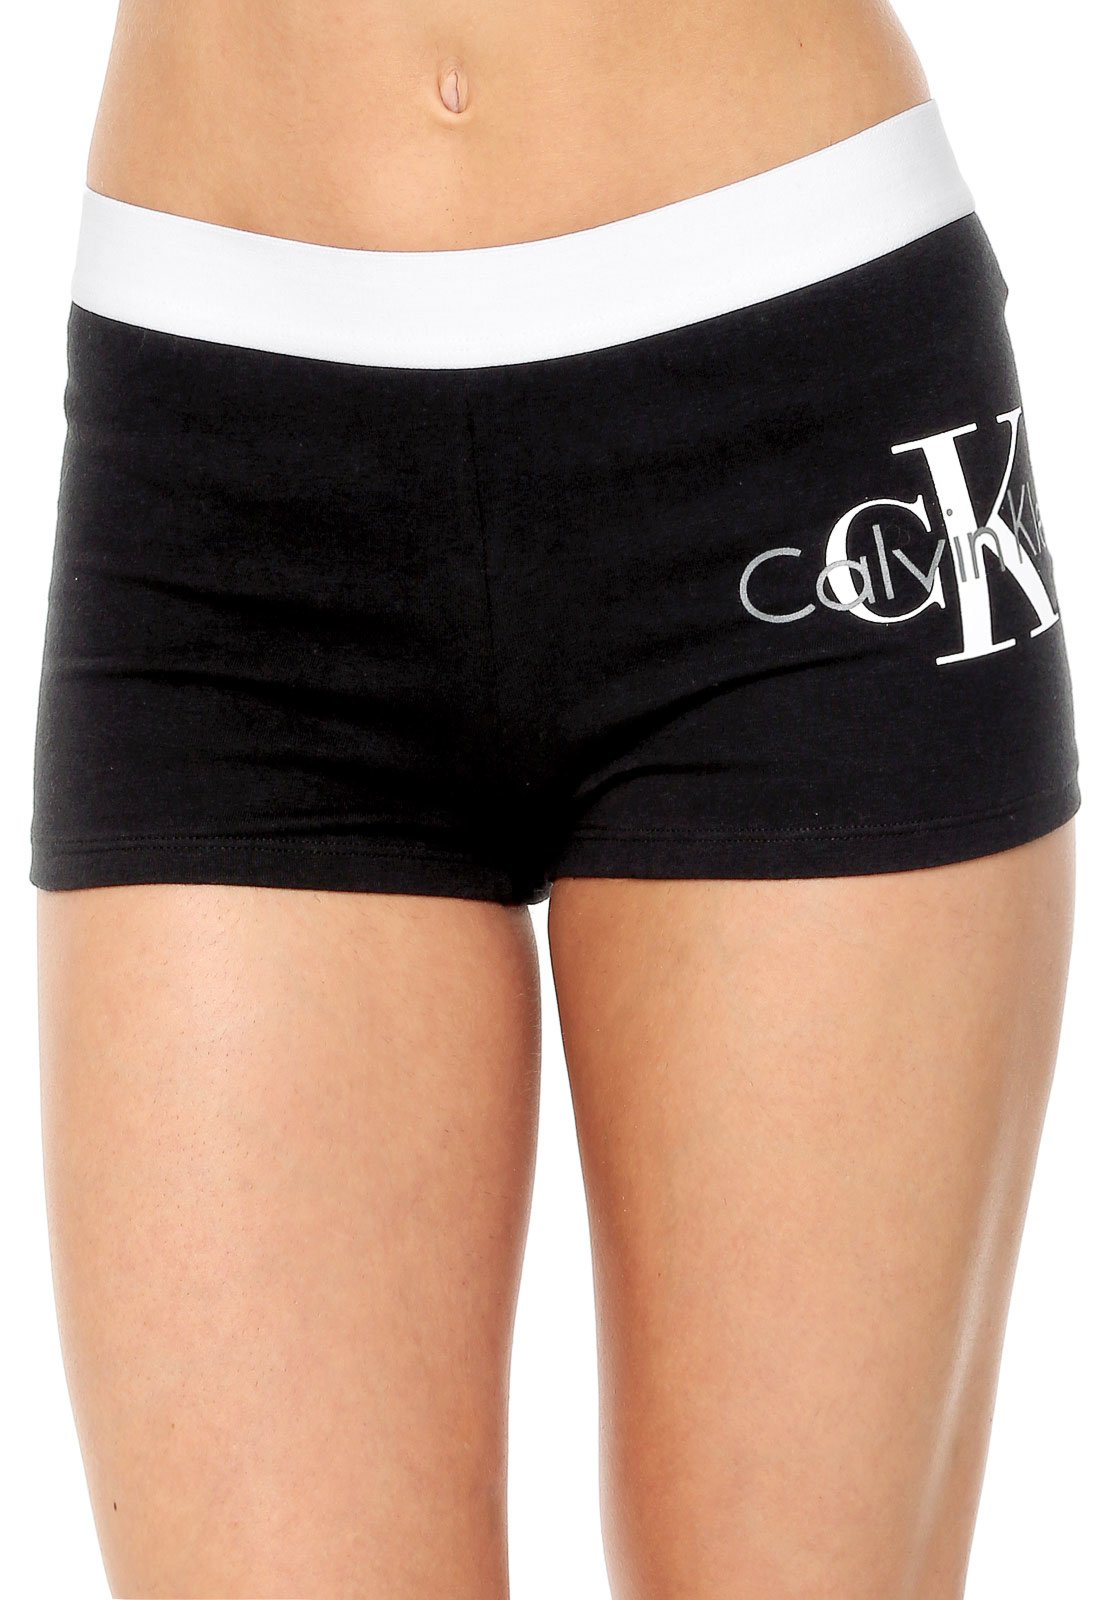 Calcinha Calvin Klein Underwear Boy Short Preta - Compre Agora